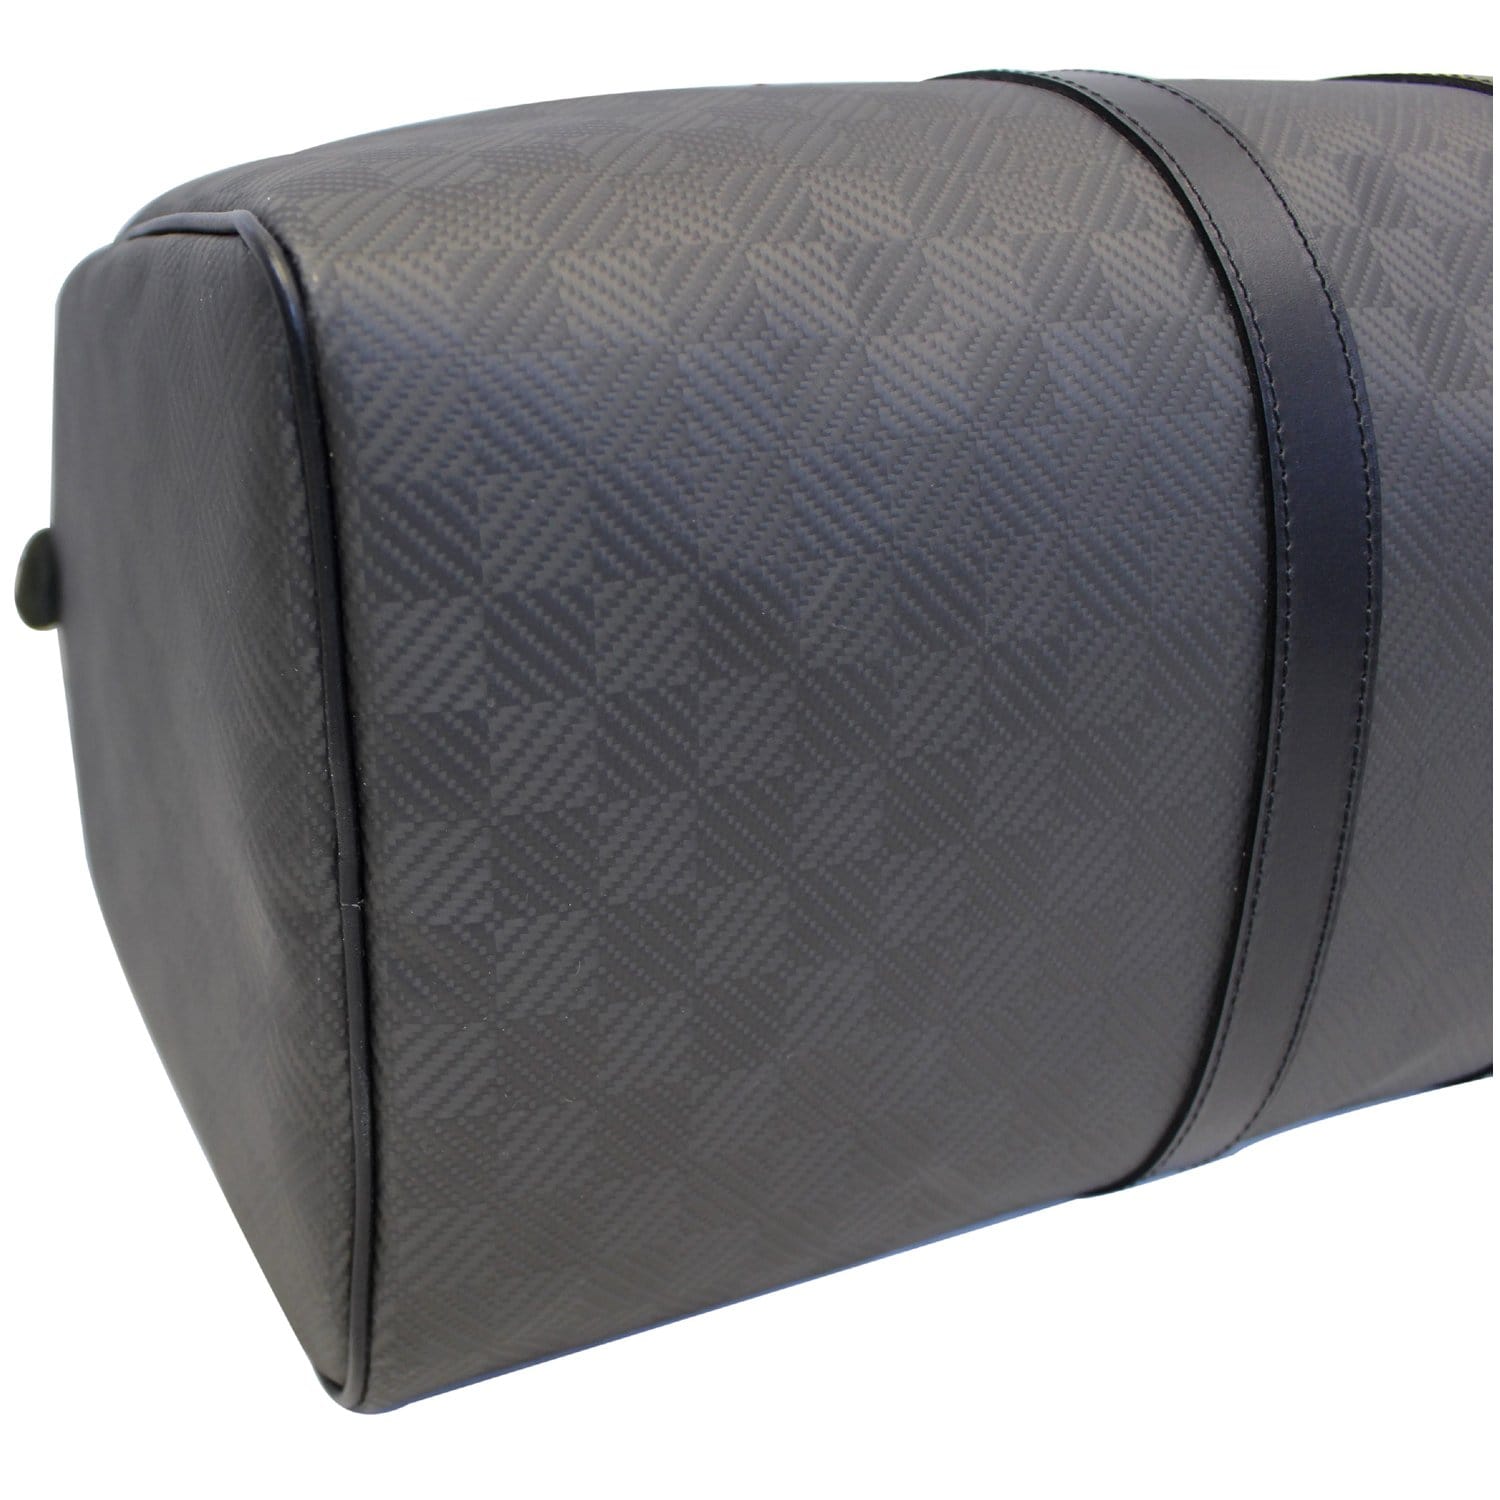 Louis Vuitton Black Carbon Fiber Damier Carbone Keepall 45 Duffle Bag 1122lv14